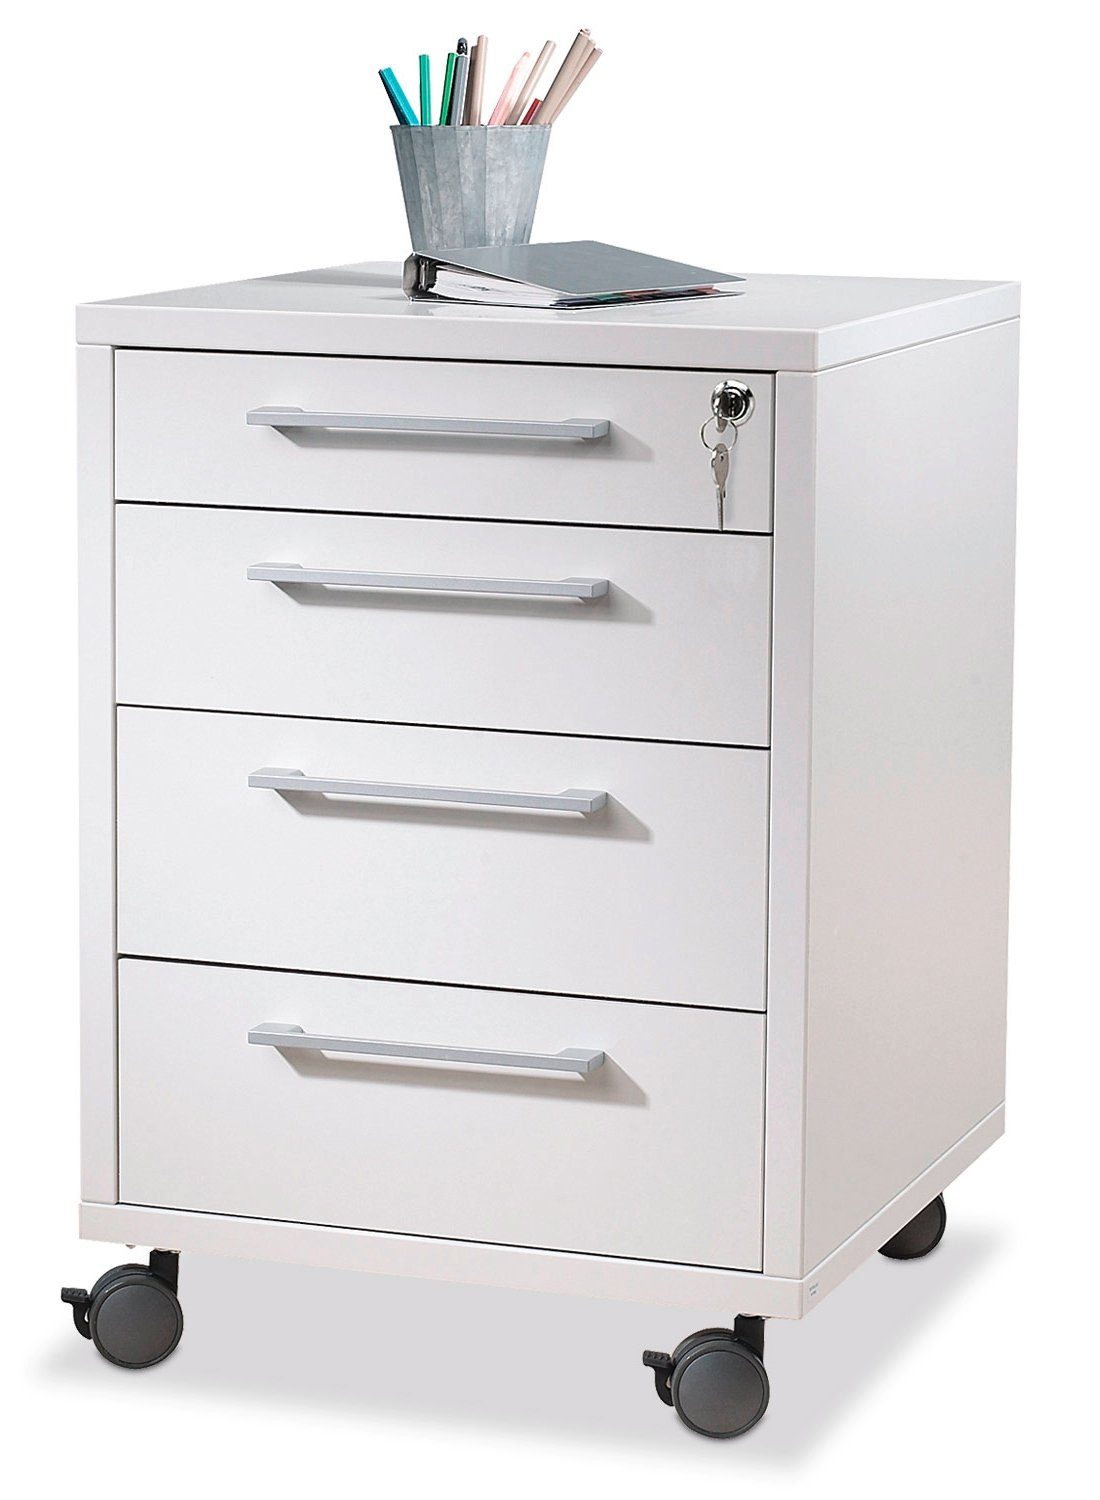 Tvilum Rollcontainer PRIMA, 48 x 68 cm, Weiß, 4 Schubladen, mit Rollen, mit abschließbarer Schublade | Rollcontainer